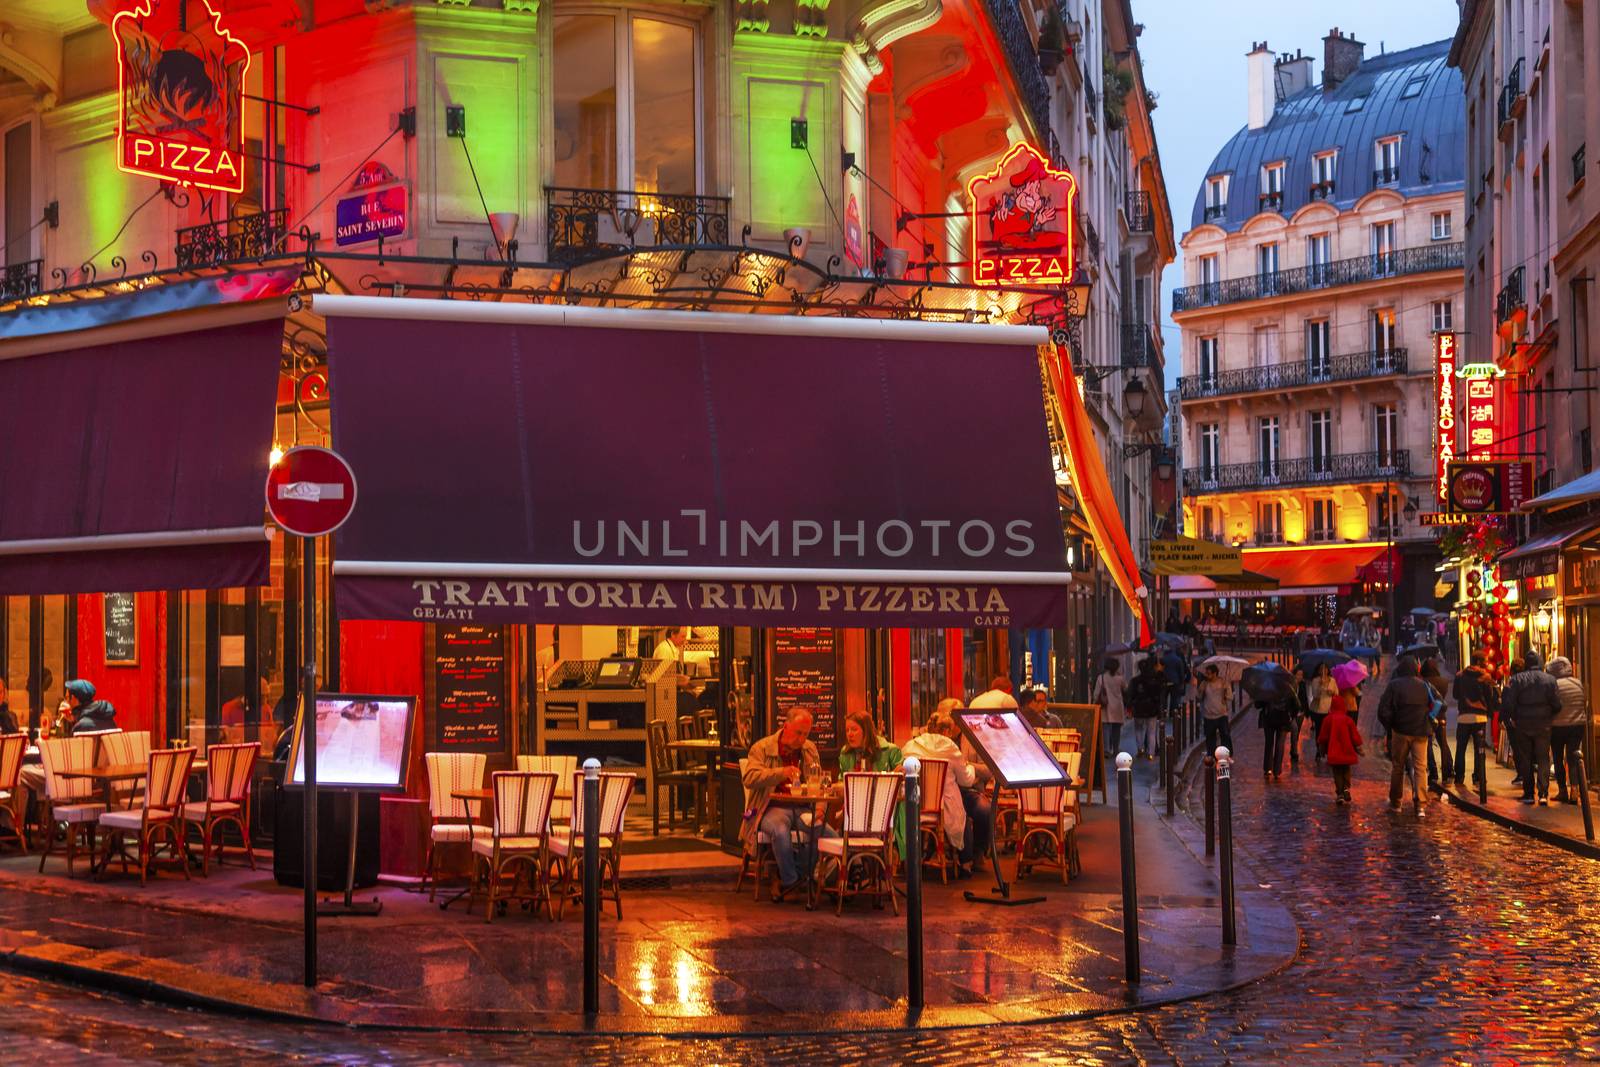 Wine Bars Restaurants Colorful Rainy Streets Tourists Lovers Walking Latin Quarter West Bank Seine Latin Quarter Rue De La Harpe Paris France